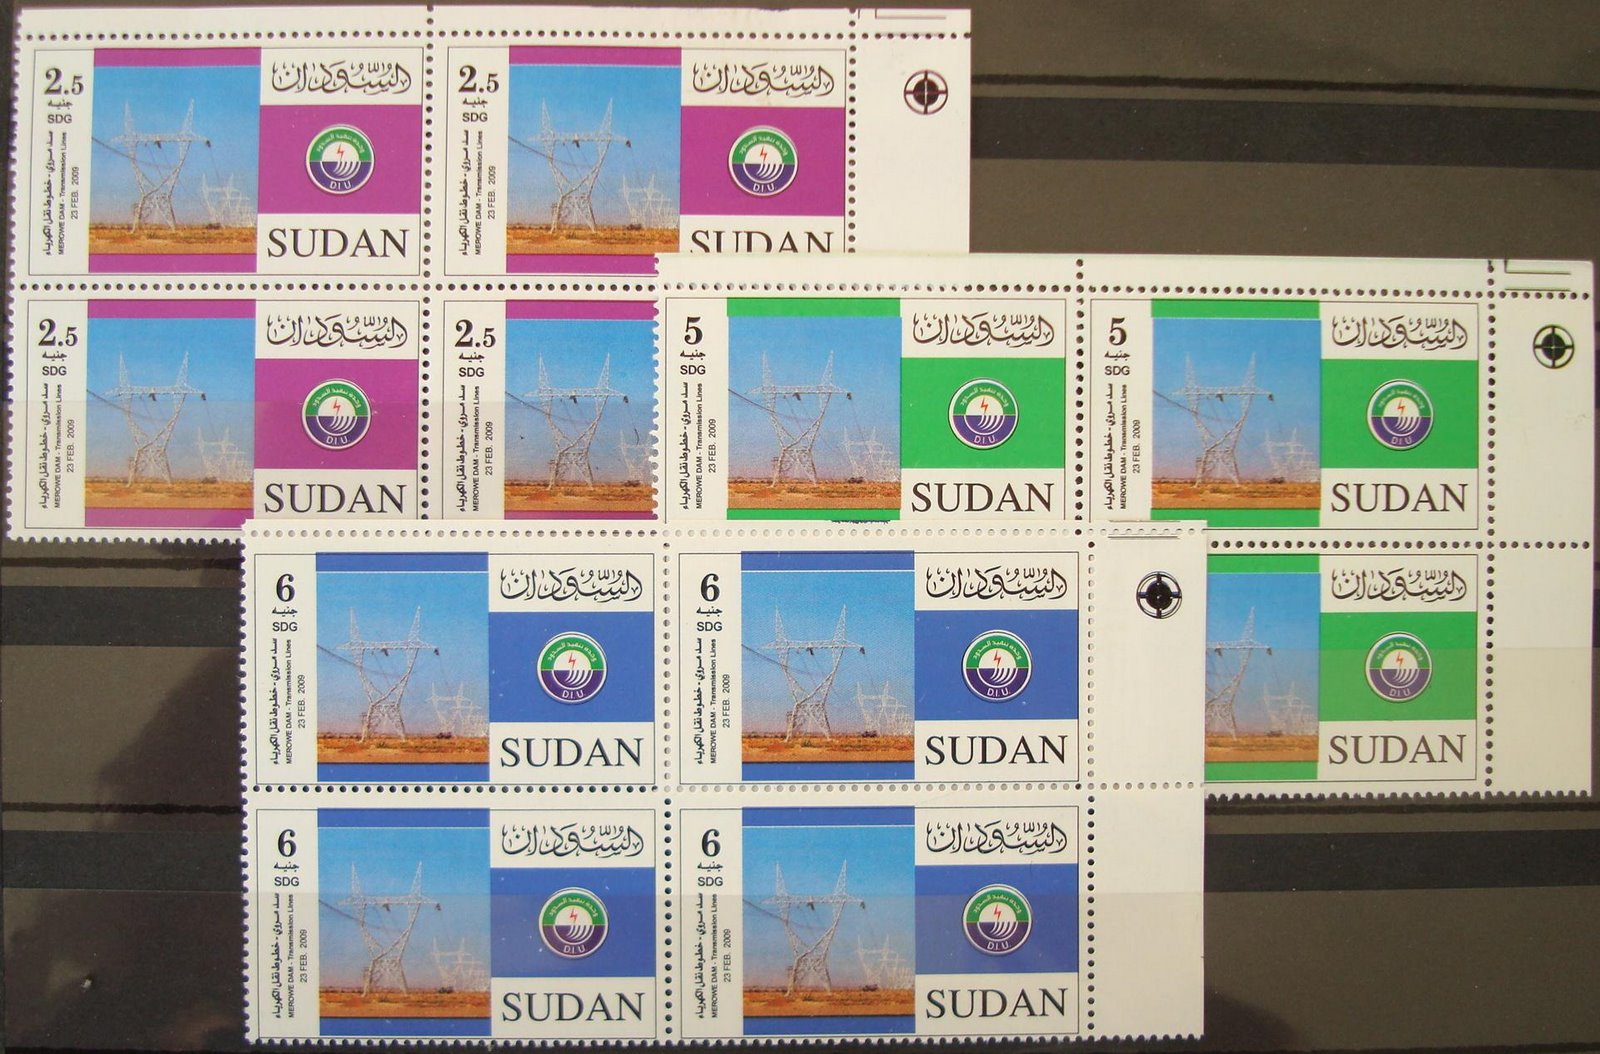 [Sudan+May+2009.JPG]